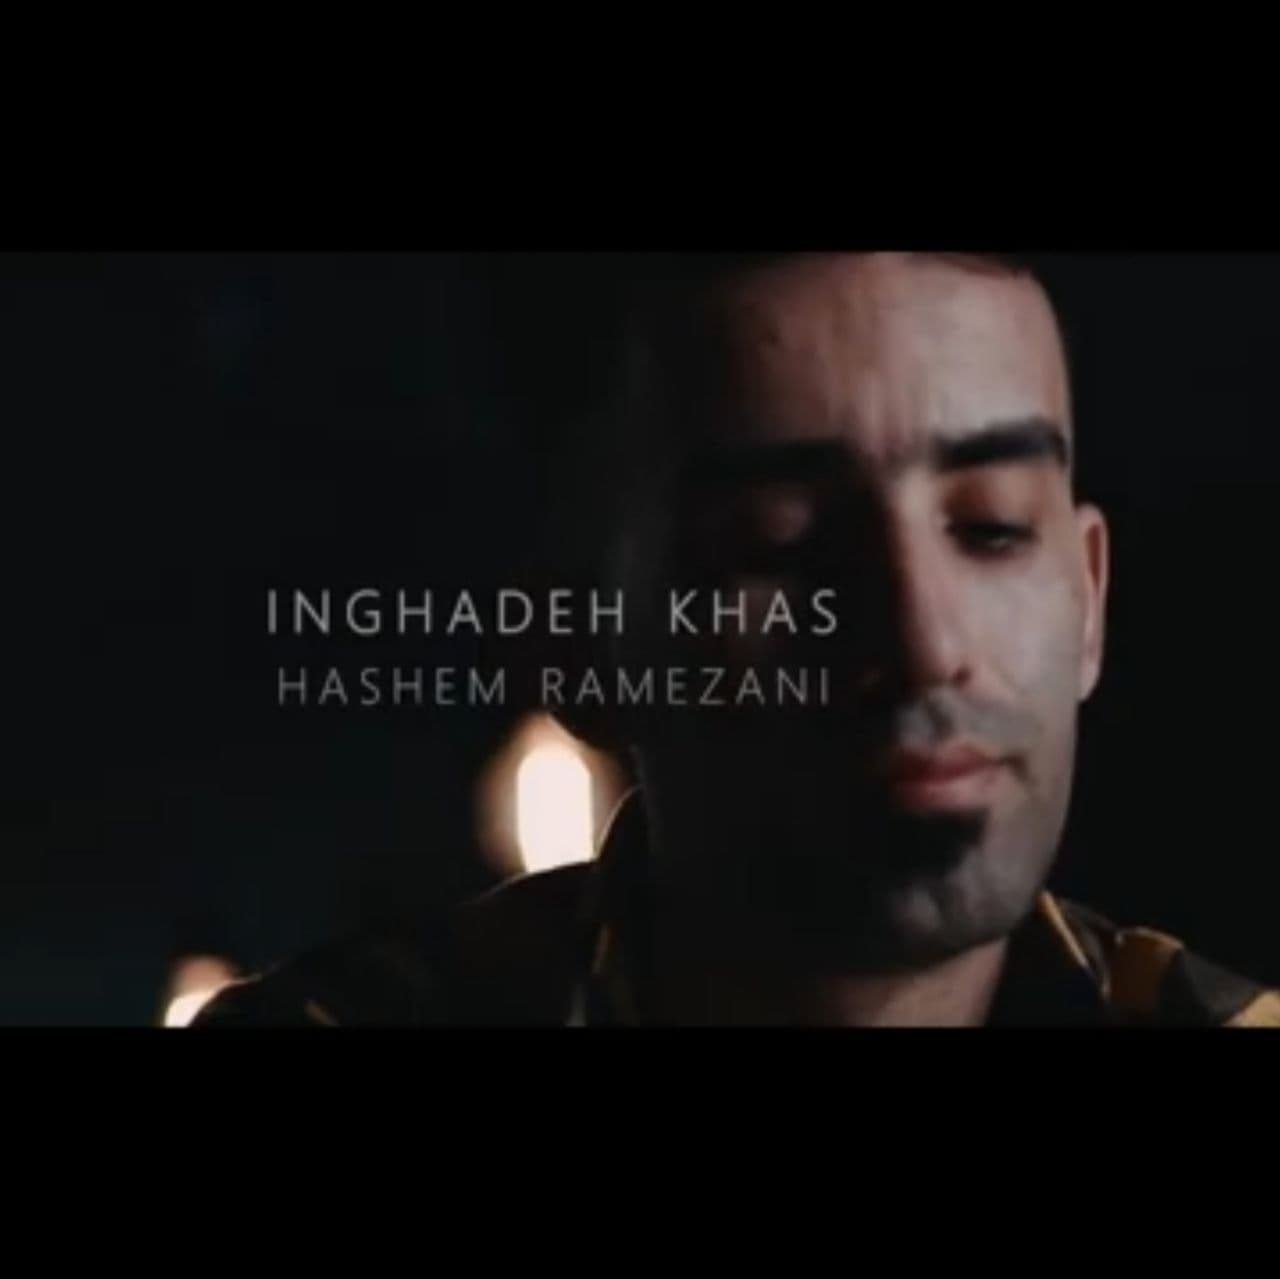 دانلود موزیک ویدیو جدید هاشم رمضانی به اسم اینقده خاص (ویدیو)